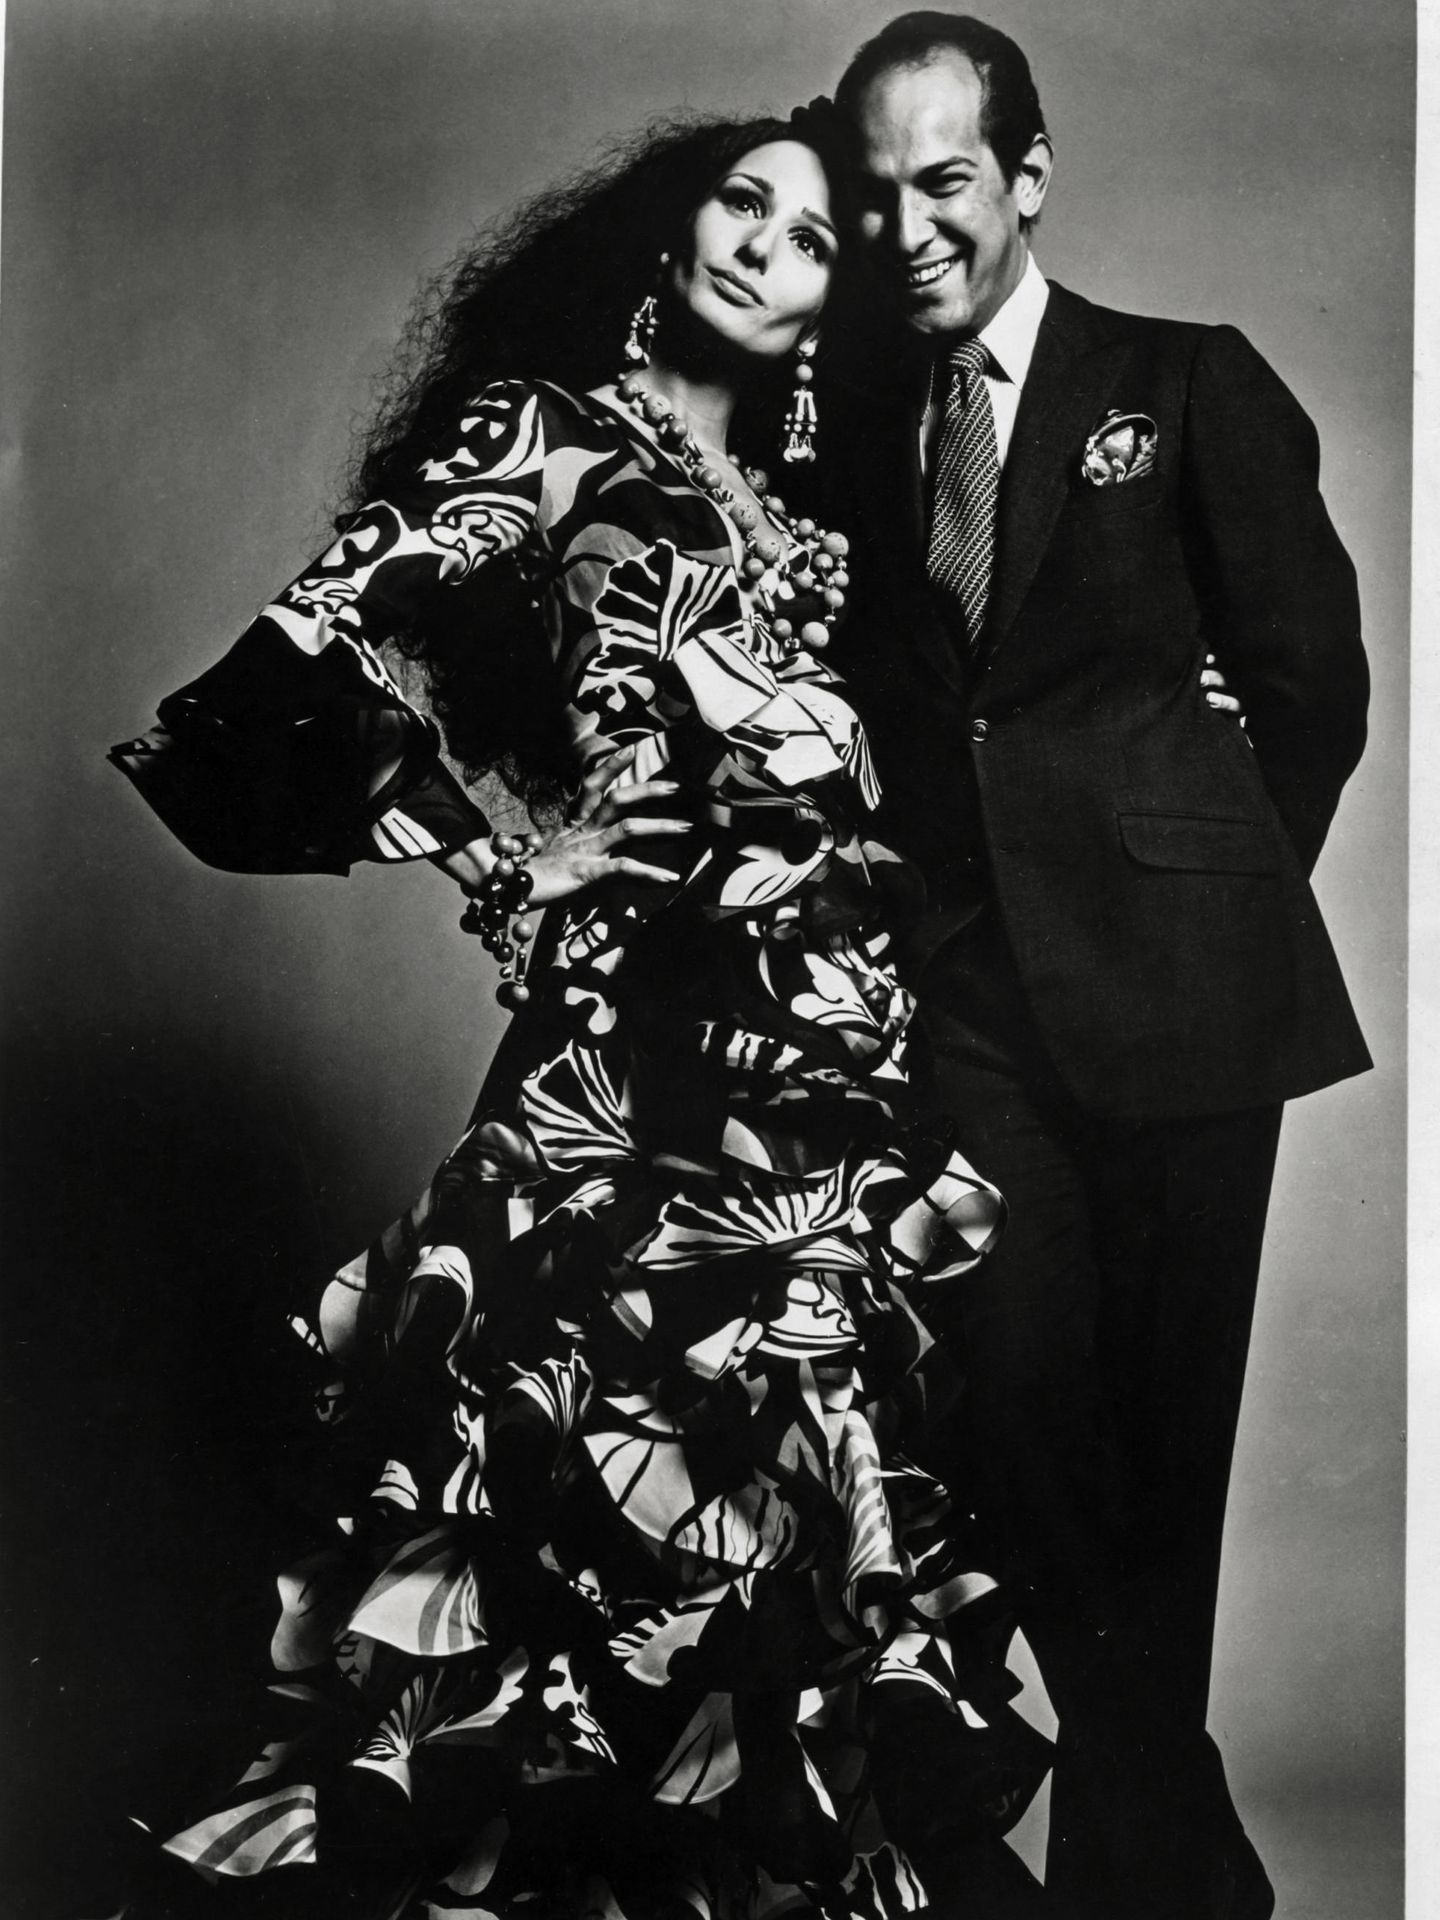 Naty y Oscar de la Renta, retratados por Alexius Ruspoli Rodríguez, Nueva York, 1968. (Archivos de Naty, por cortesía de ©Alexius Ruspoli Rodríguez)